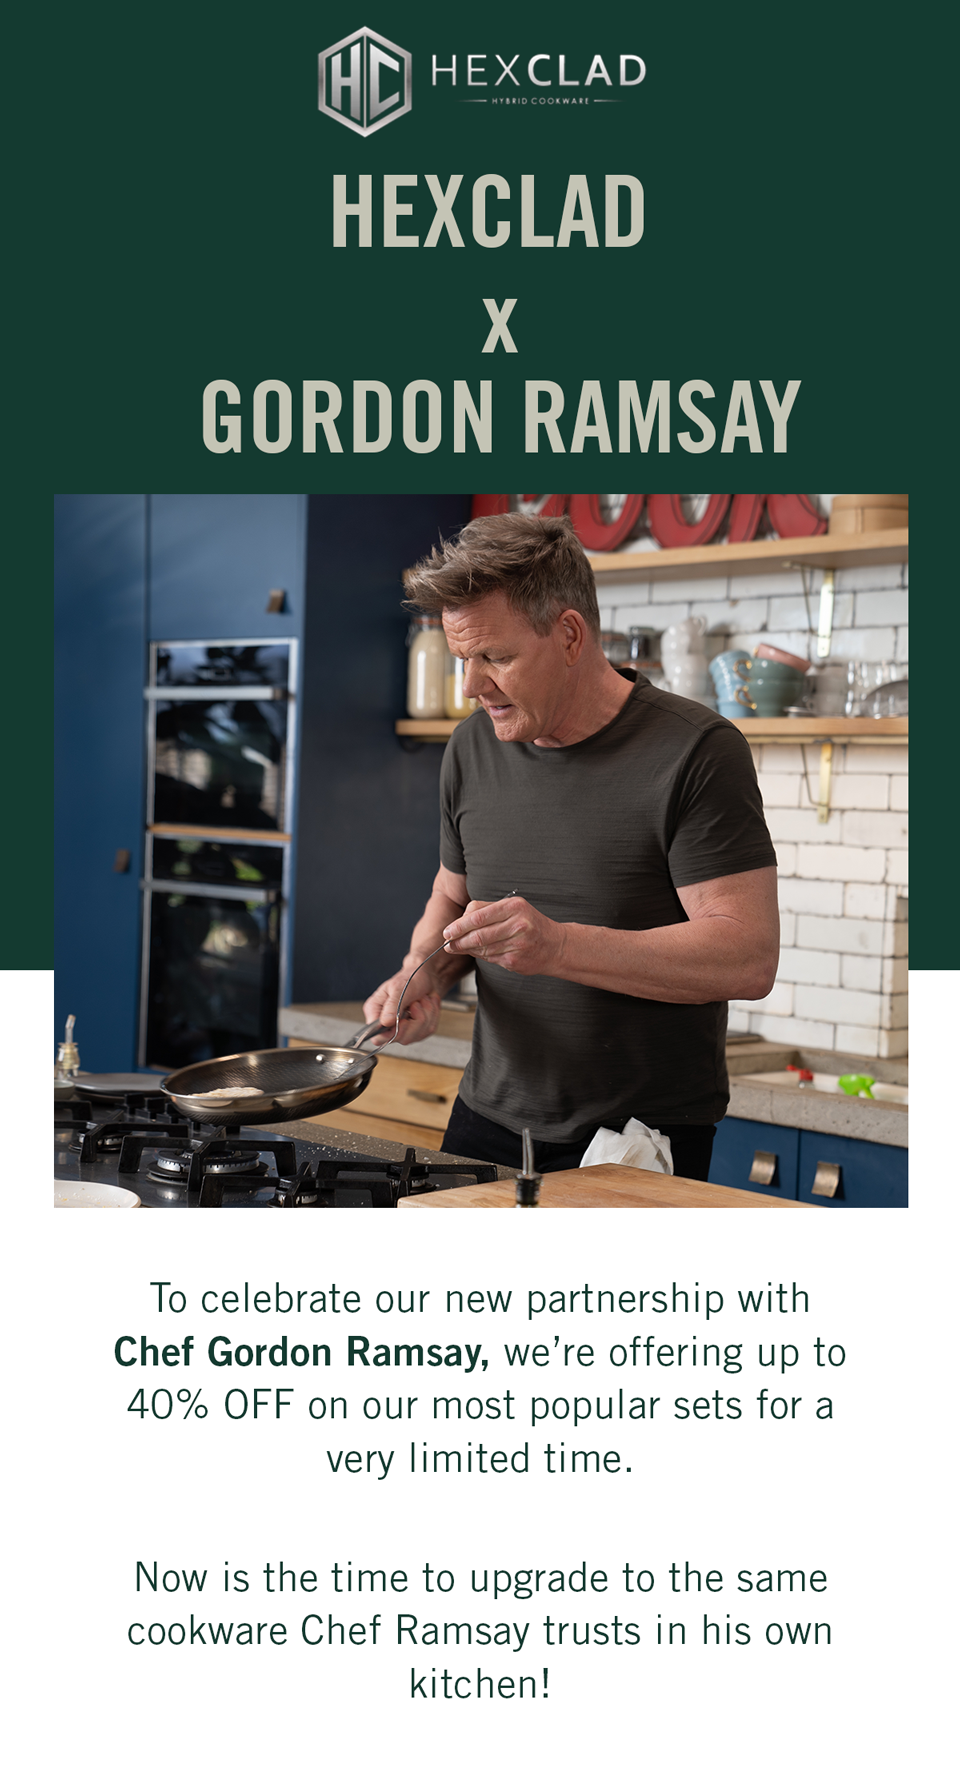 HexClad Cookware Teams with Chef Gordon Ramsay